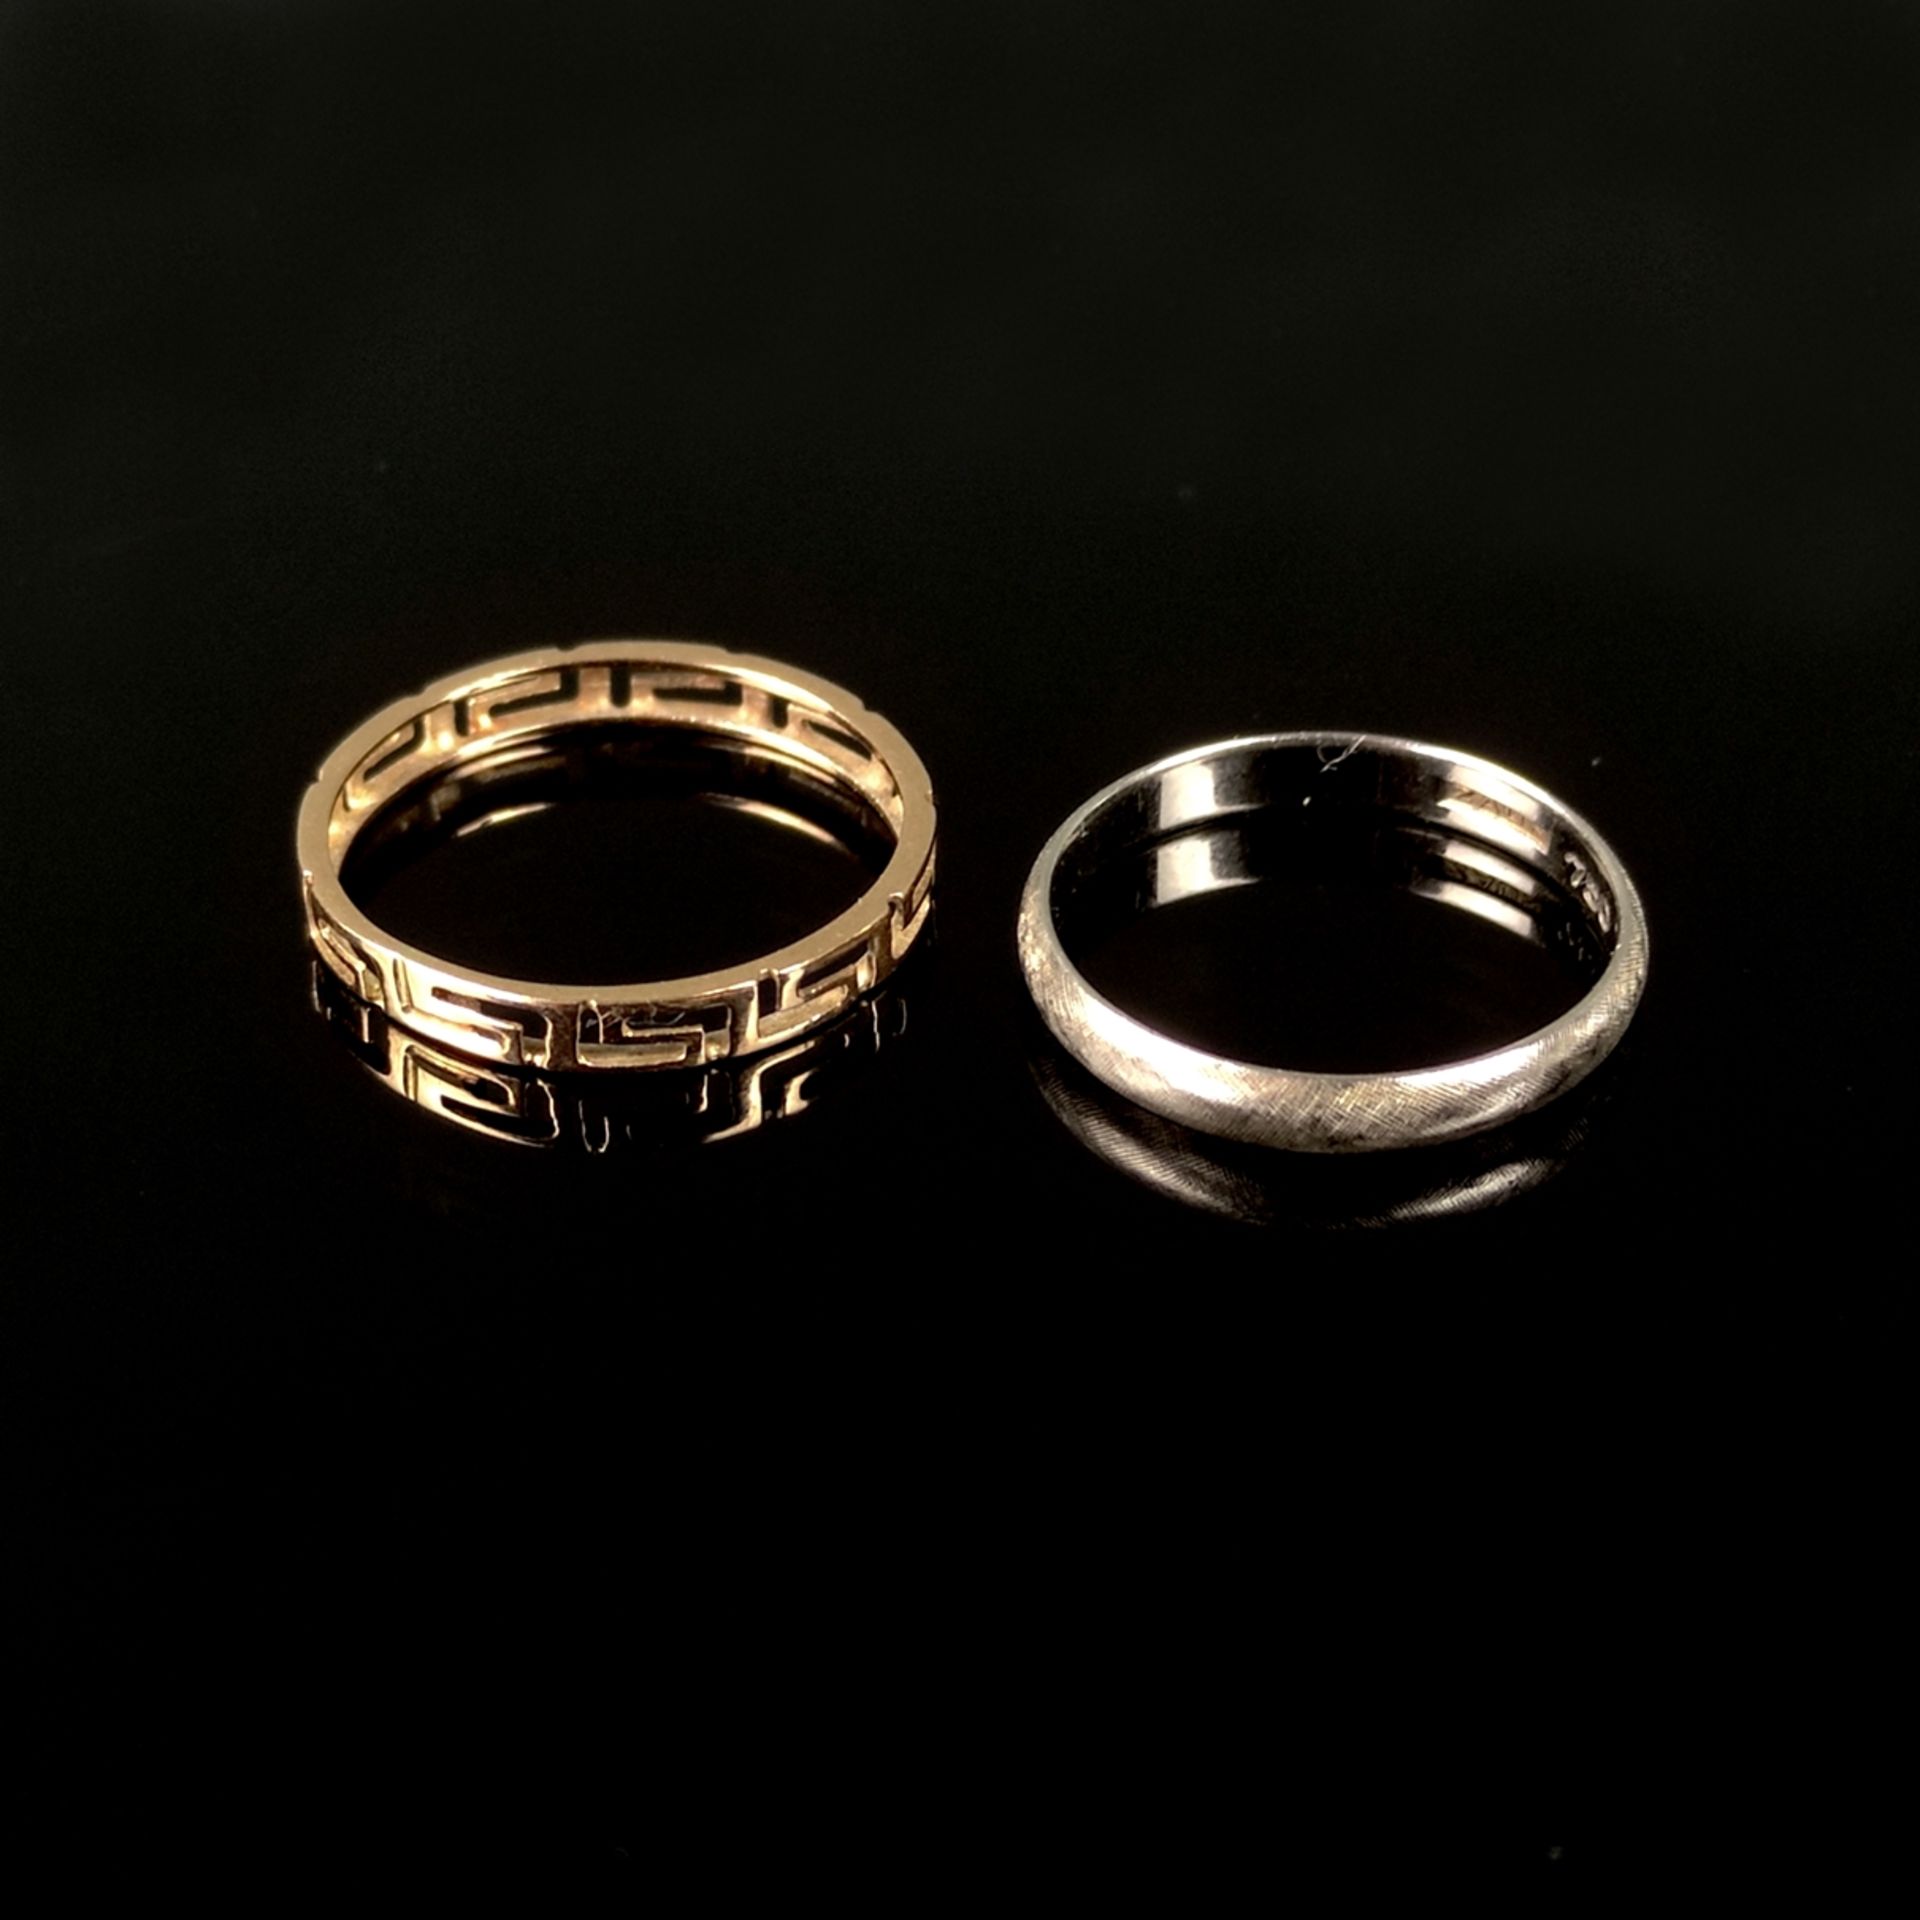 Zwei Bandringe, einer 750/18K Weißgold (punziert), 1,9g, Ringgröße 54 und einer mit durchbrochenem 